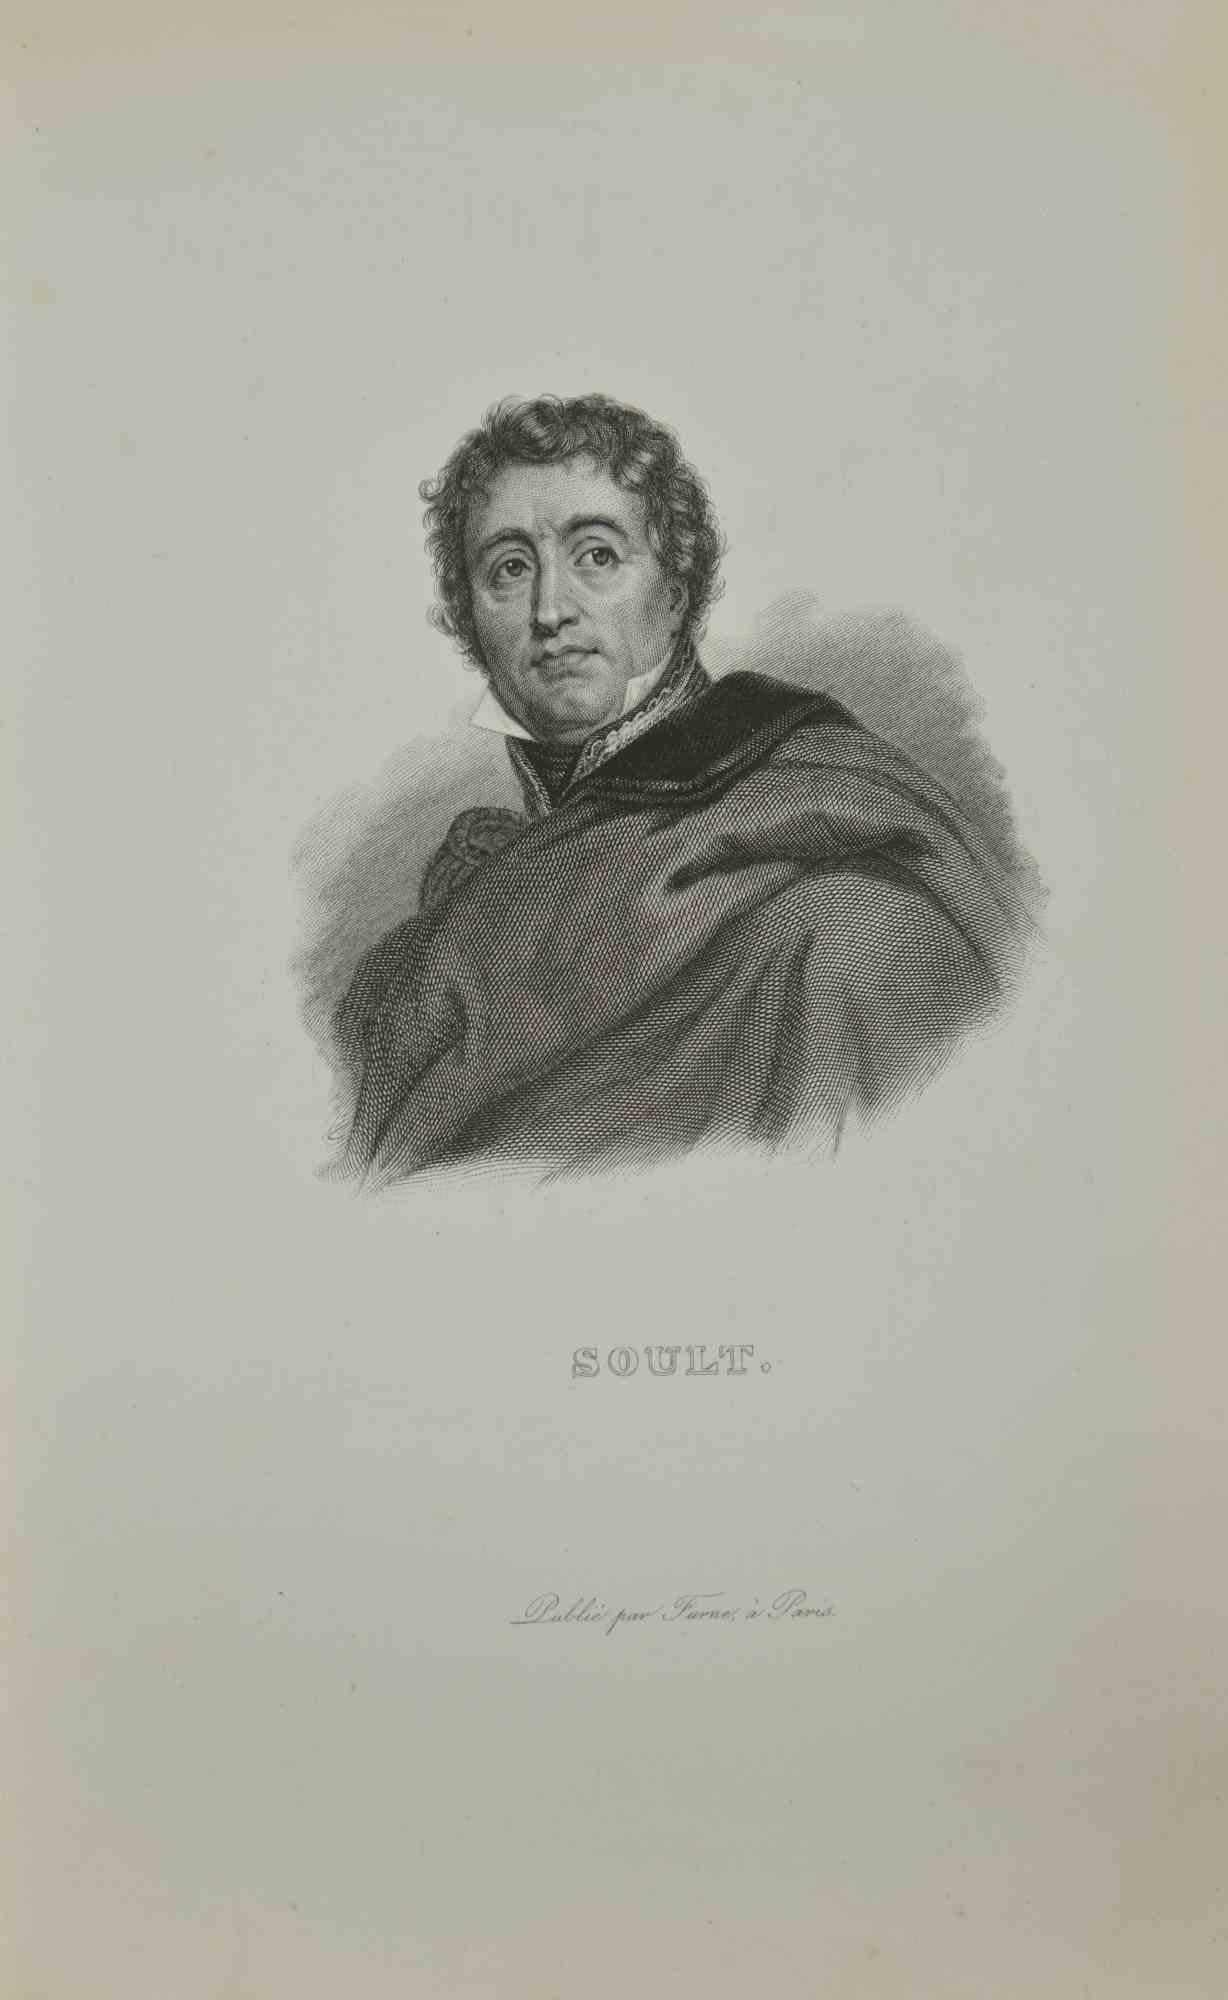 Unknown Portrait Print - Portrait of Soult  - Etching - 1837